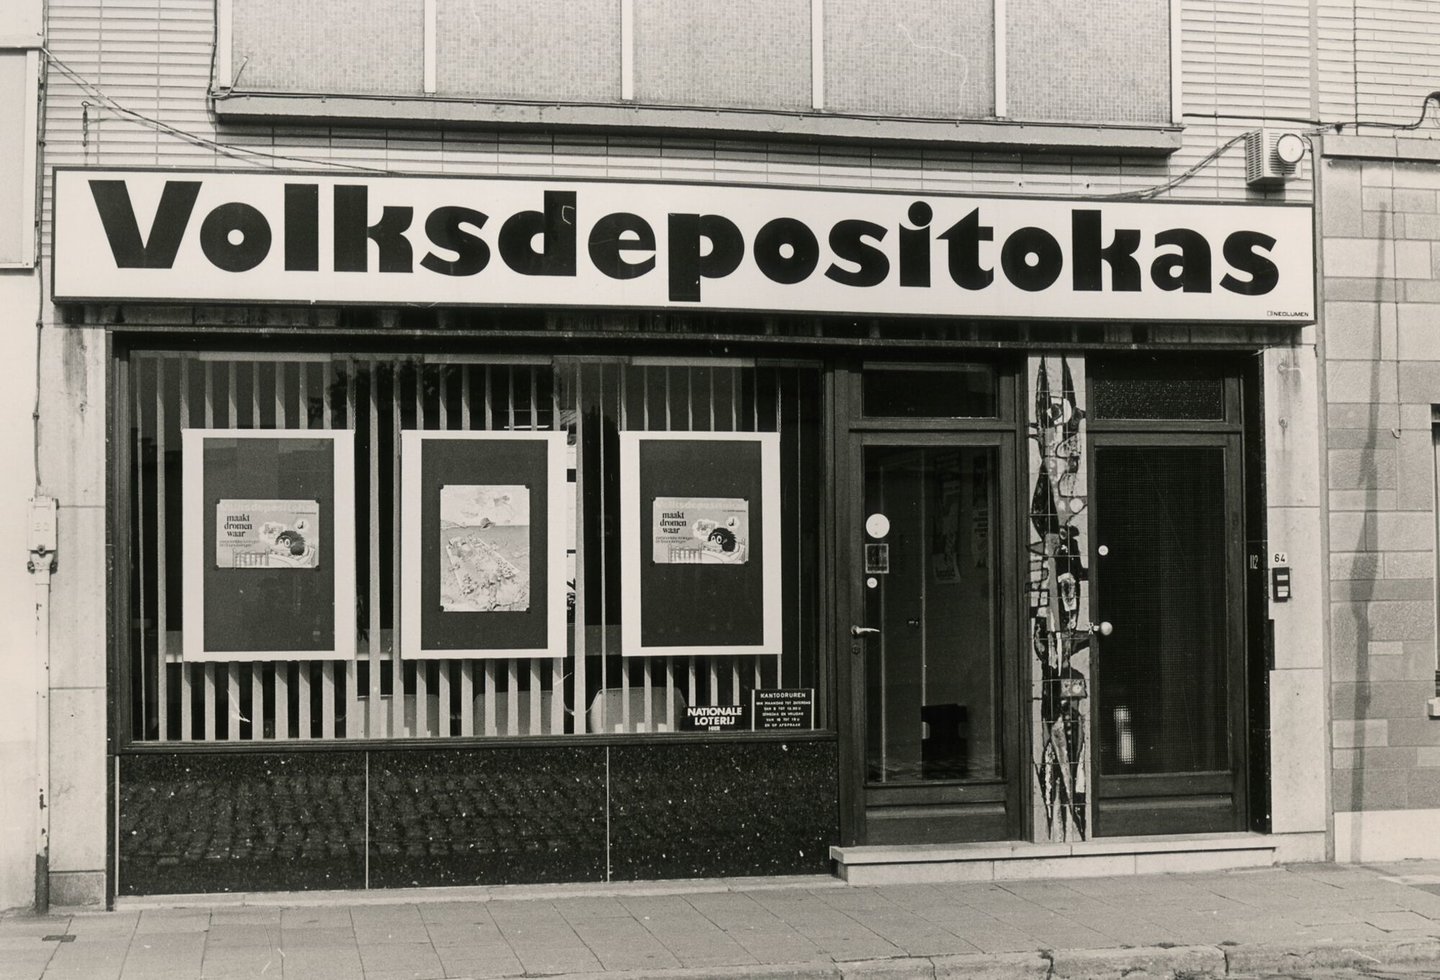 Etalage van een Volksdepositokas bankkantoor in Gent